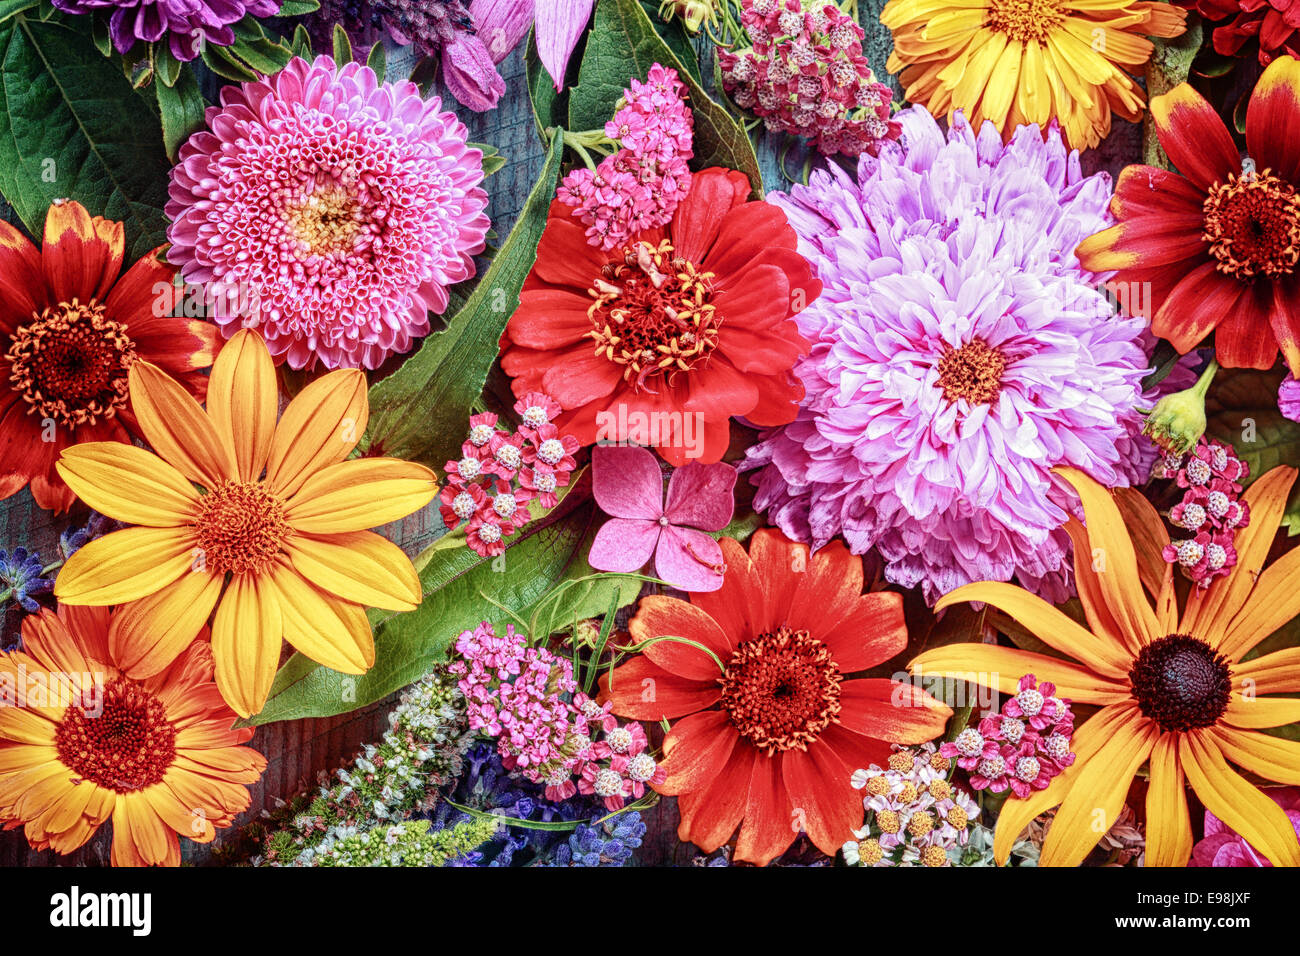 Festliche lebendige Blumenkarte mit einer großen Anordnung von bunten Sommerblumen in Regenbogenfarben wie Dahlien und Gerbera Gänseblümchen zu feiern einen besonderen Anlass oder Urlaub Stockfoto